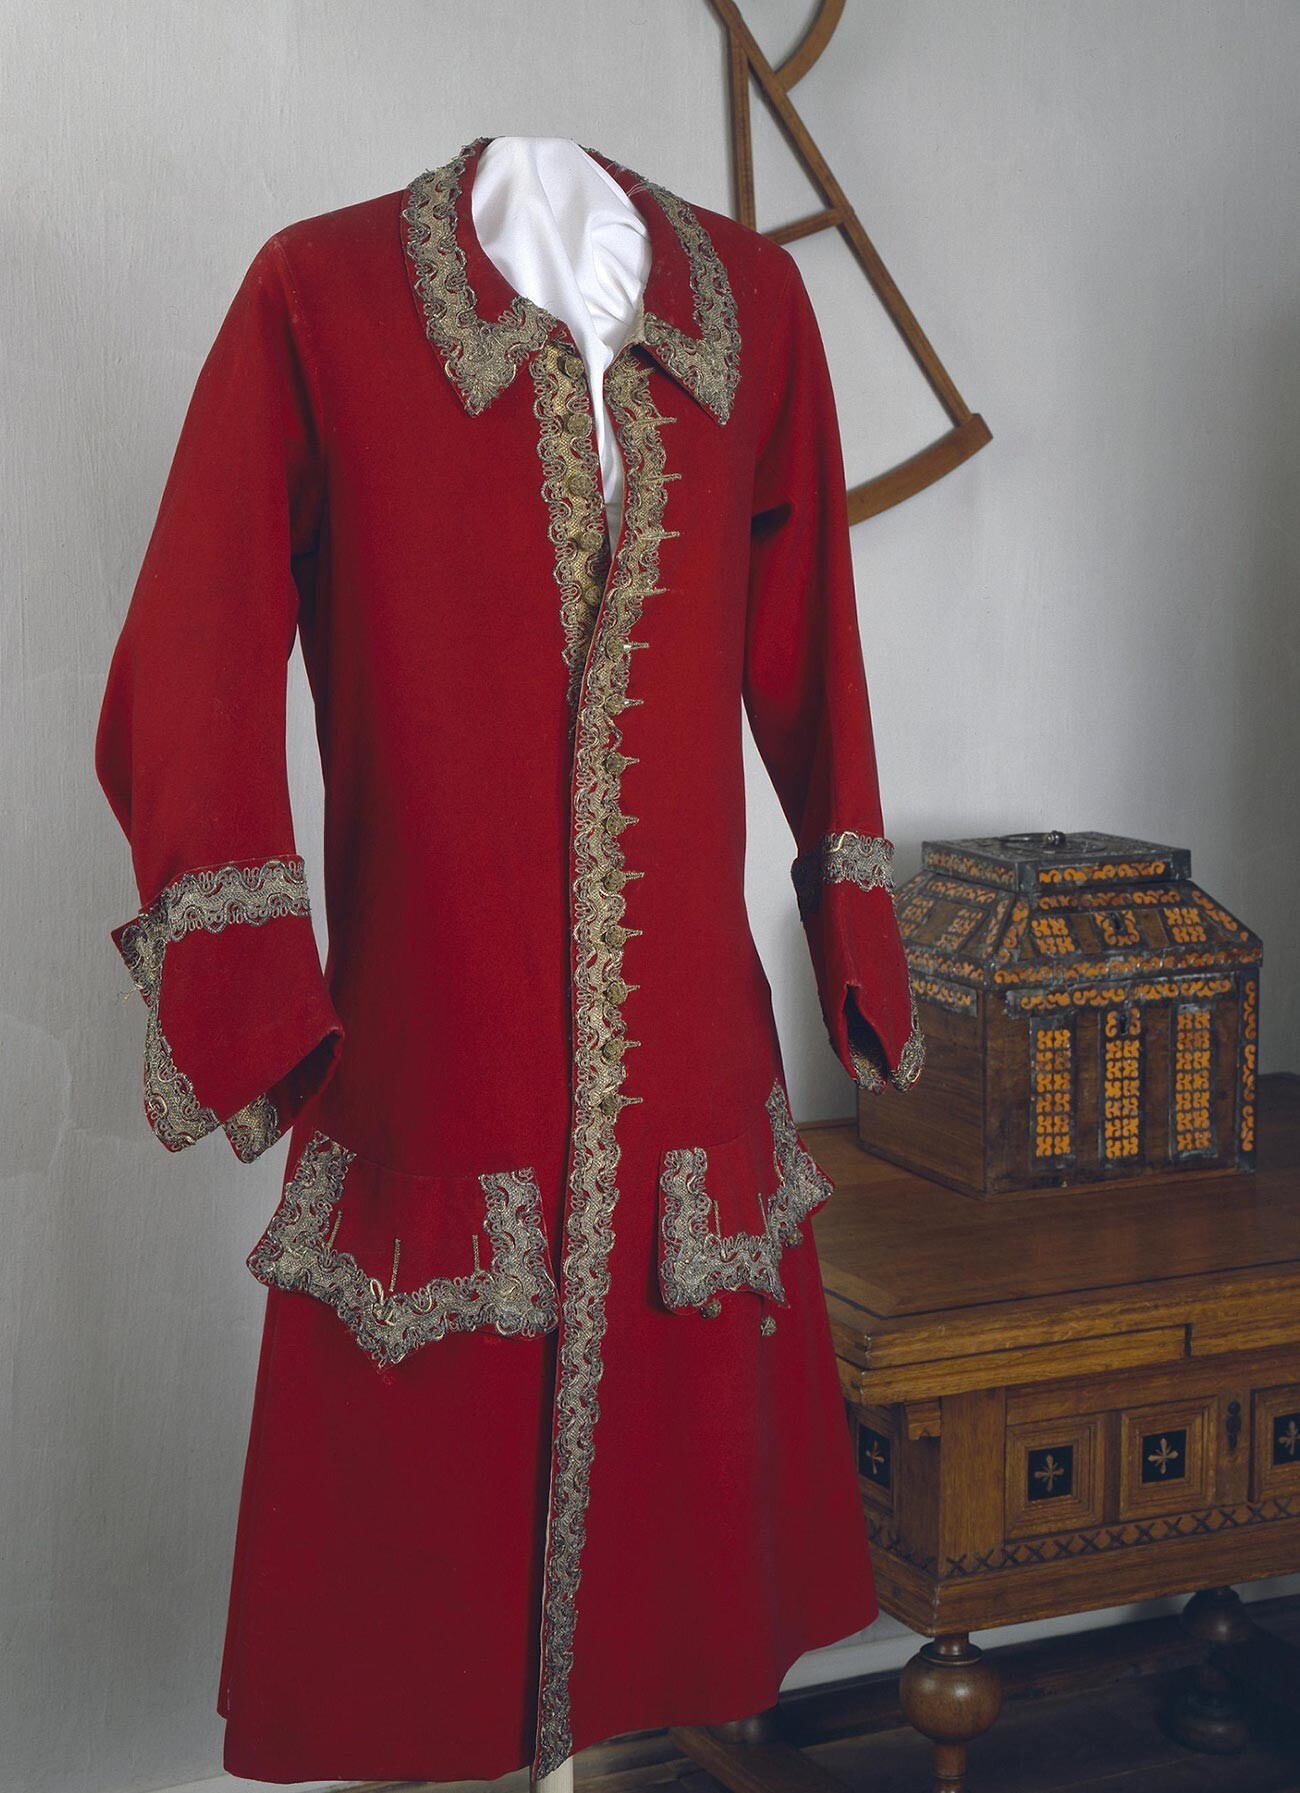 Caftán ceremonial de Pedro el Grande (una especie de chaqueta)
